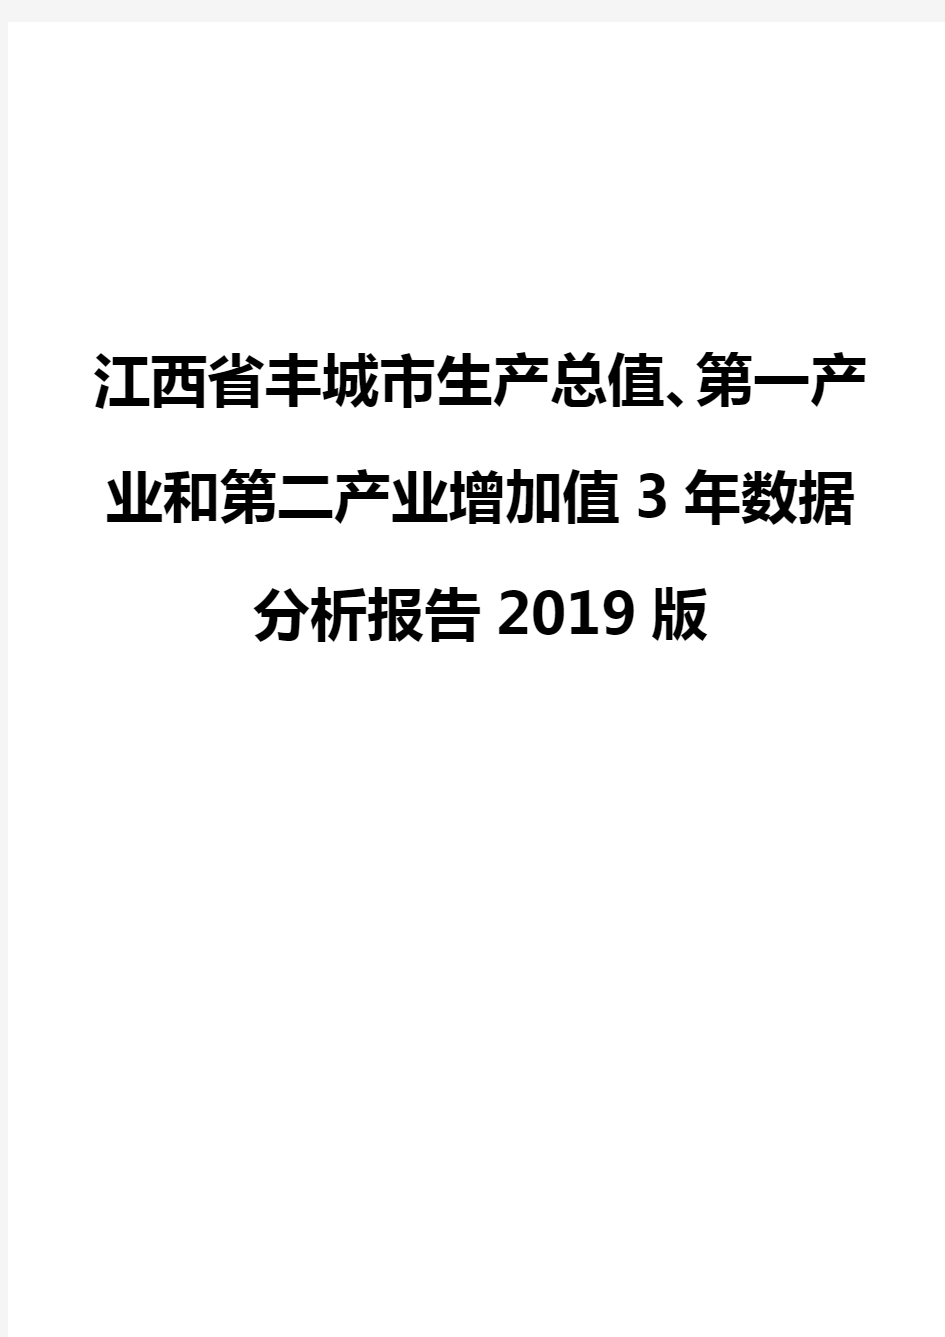 江西省丰城市生产总值、第一产业和第二产业增加值3年数据分析报告2019版